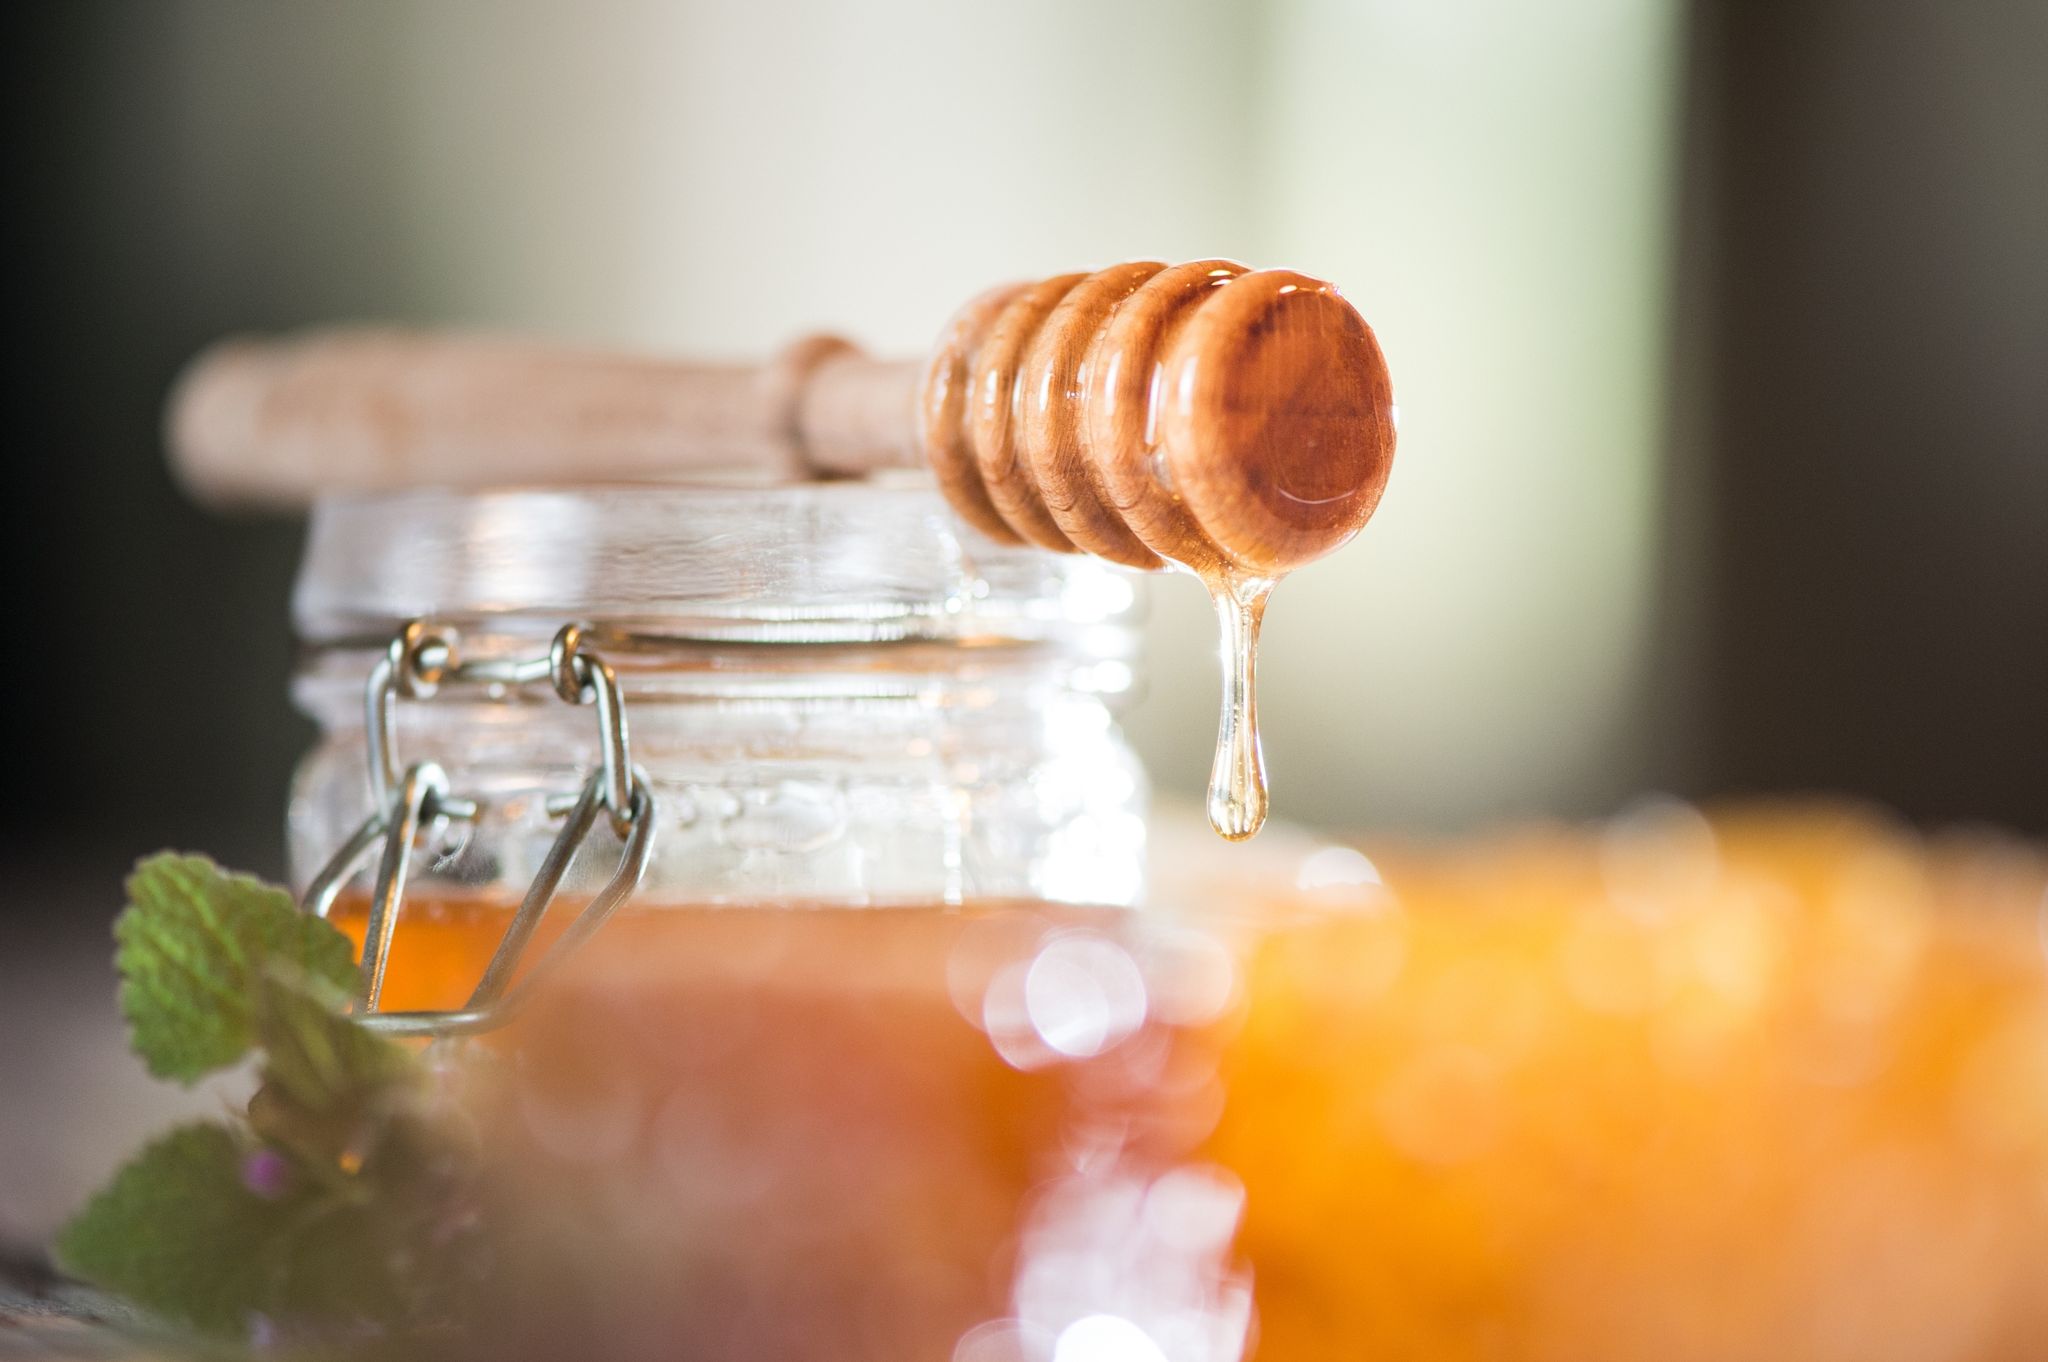 Honig kann dafür sorgen, dass die Verletzungen durch eine verschluckte Knopfbatterie nicht so schwer ausfallen.